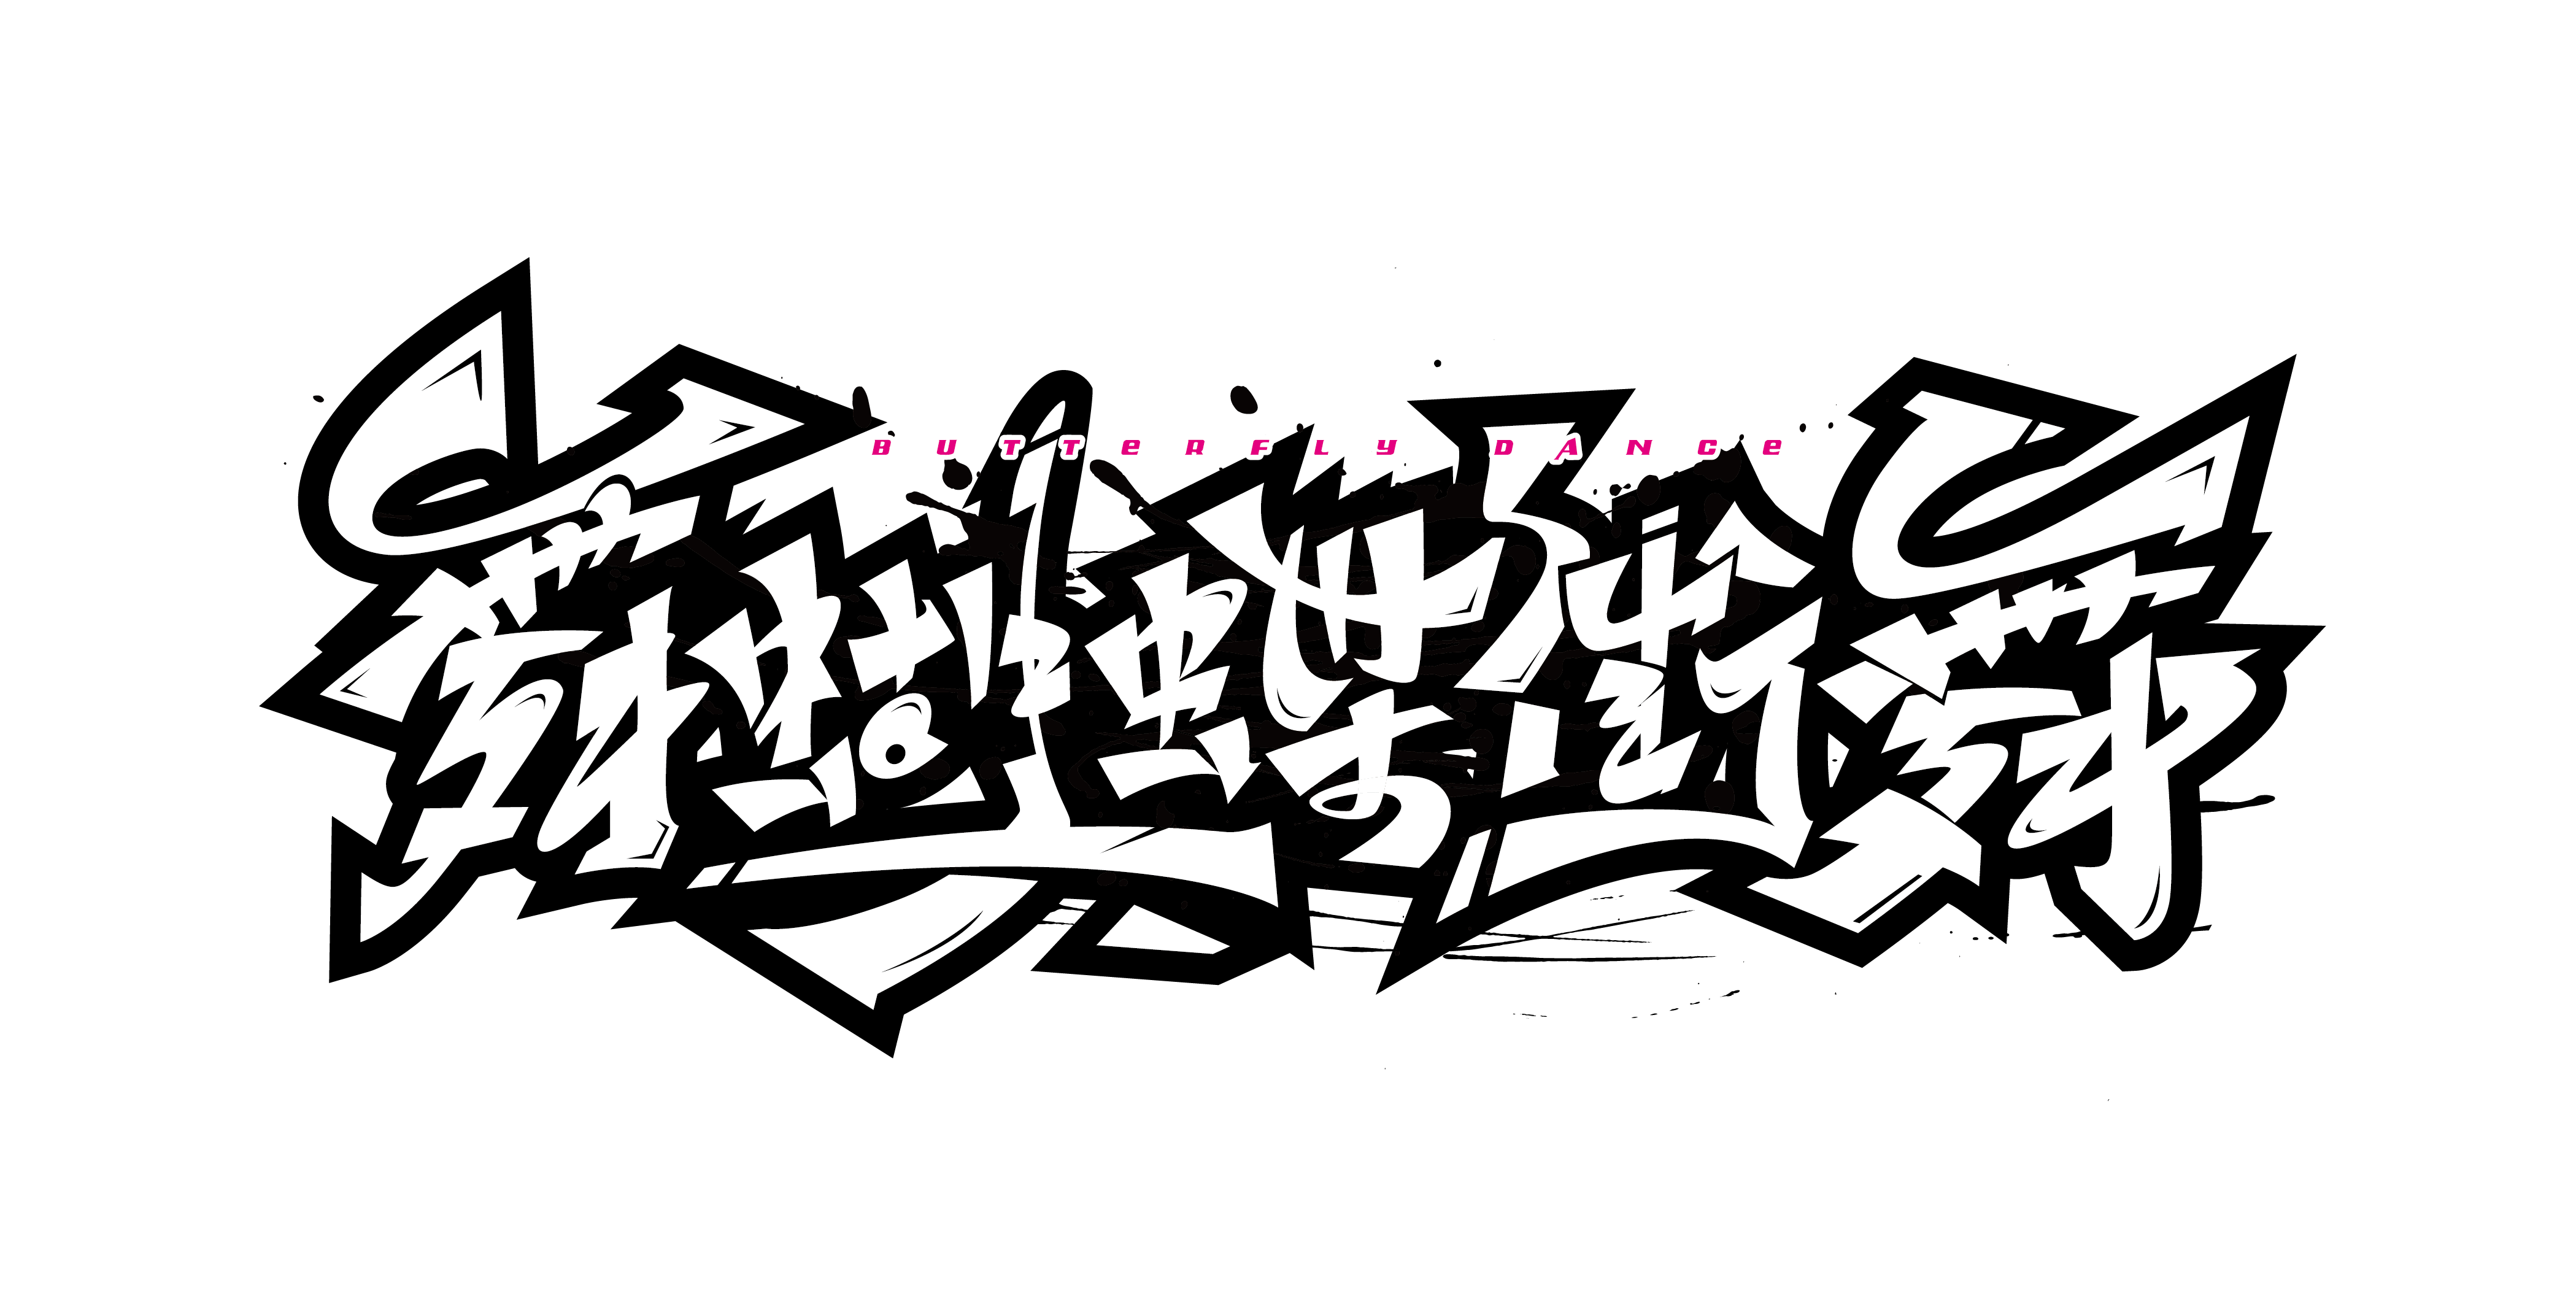 Граффити шрифты